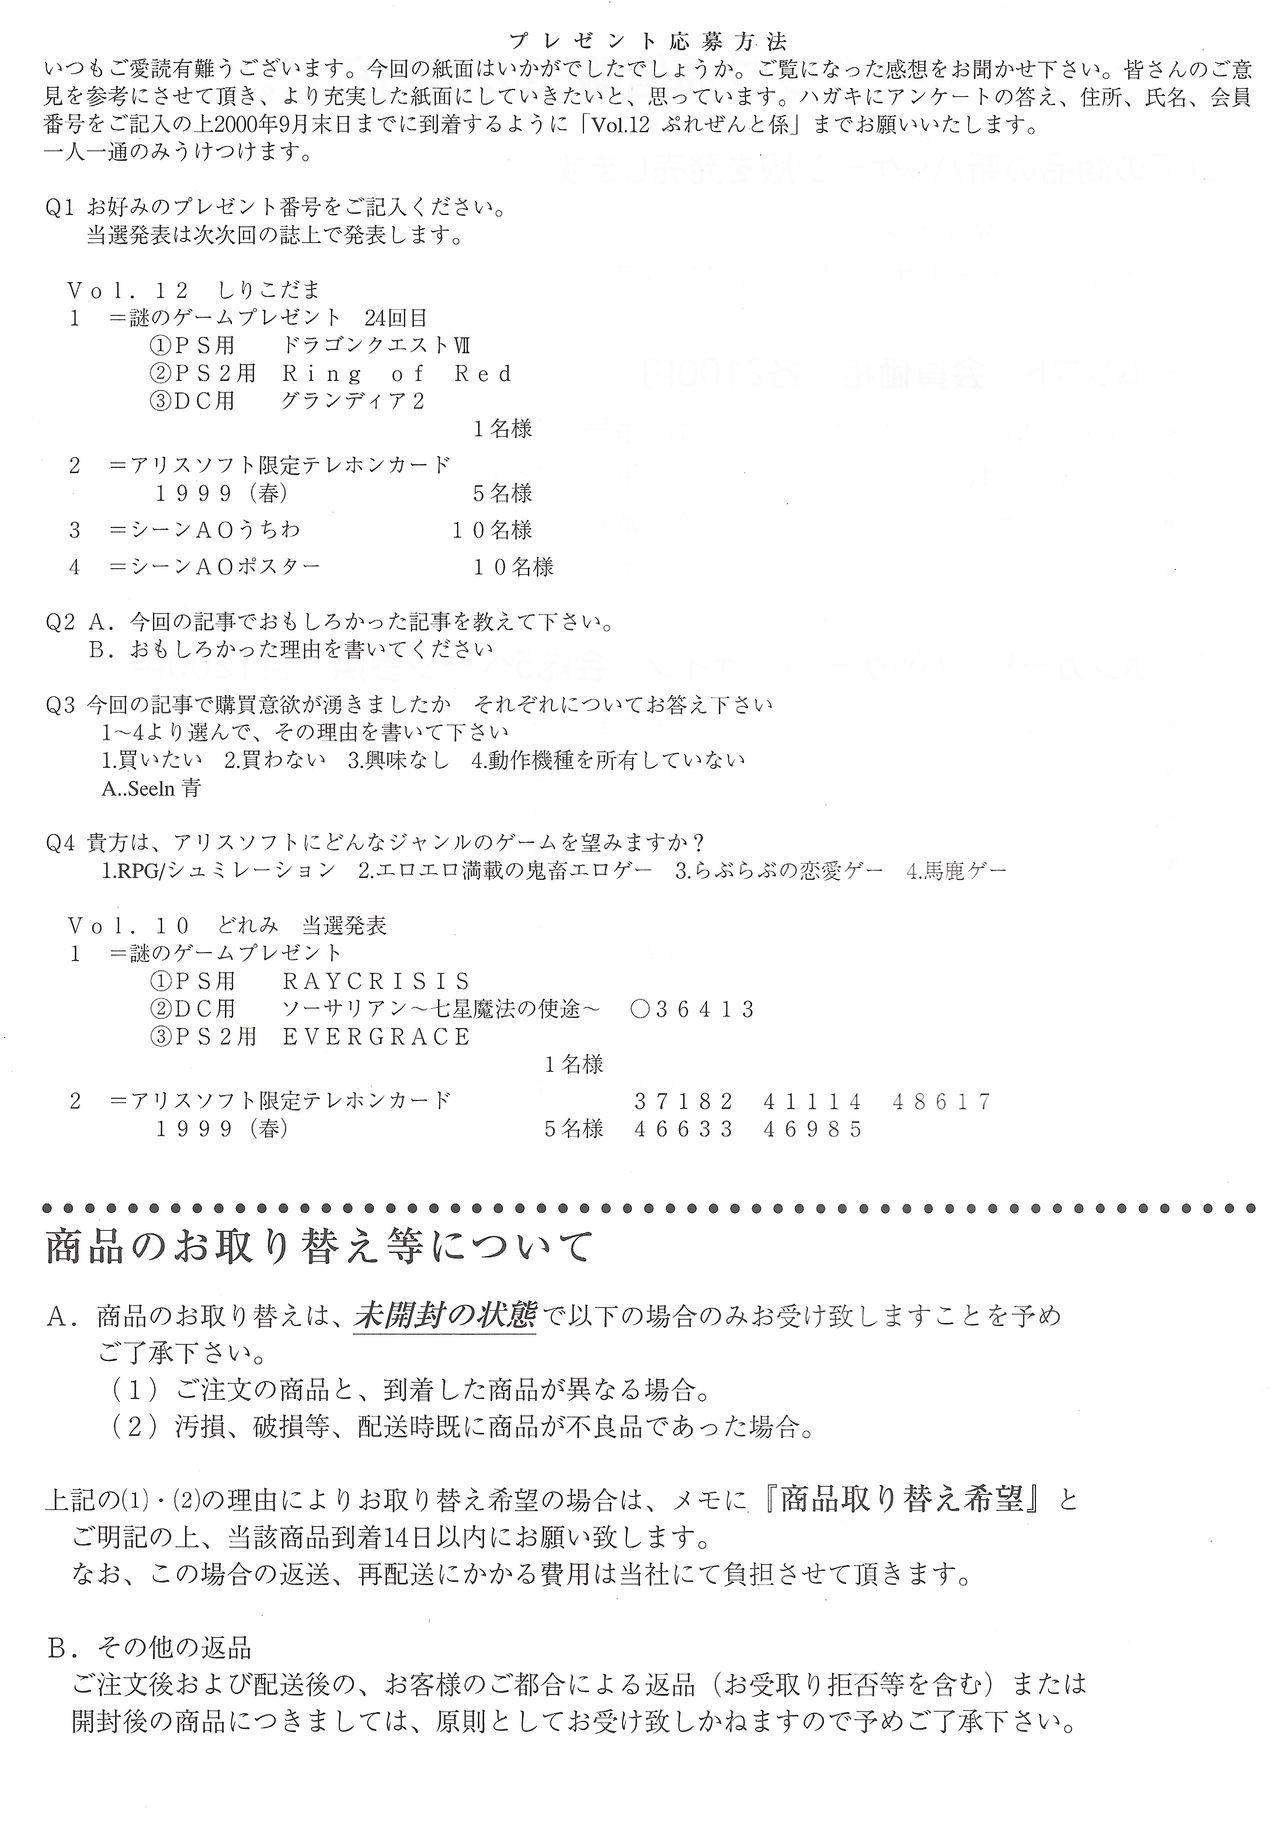 Arisu no Denchi Bakudan Vol. 12 27